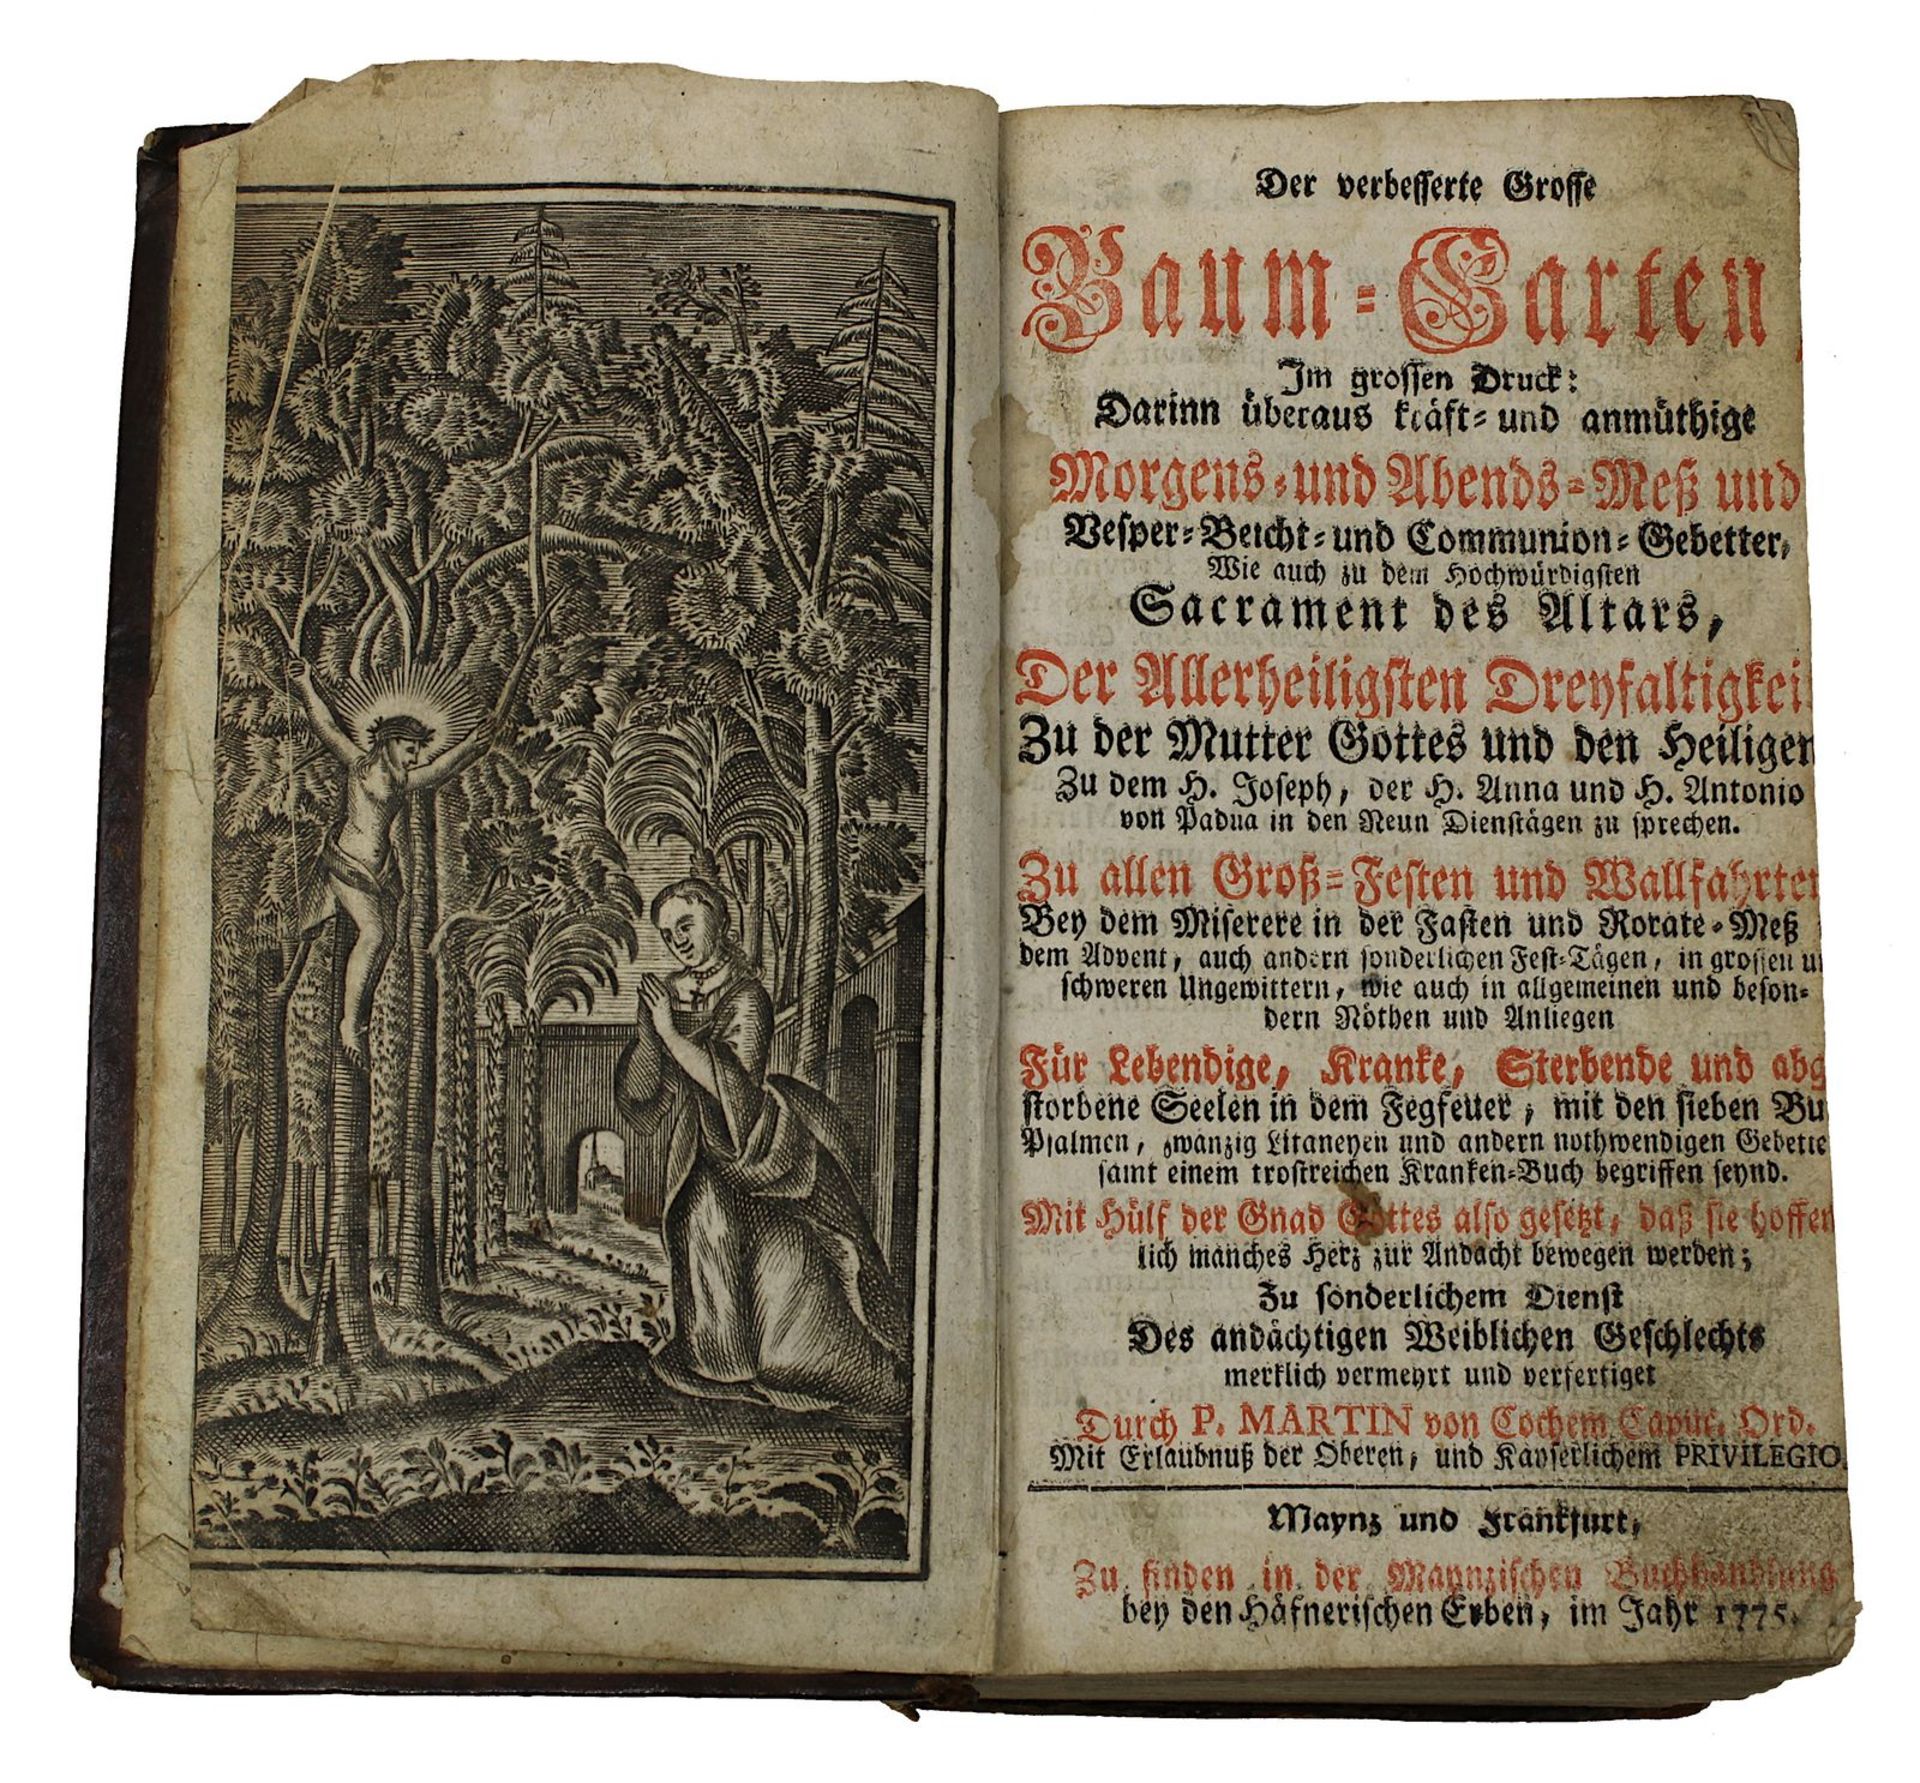 Martin von Cochem "Der verbesserte Grosse Baum-Garten", Mainz und Frankfurt 1775, 9